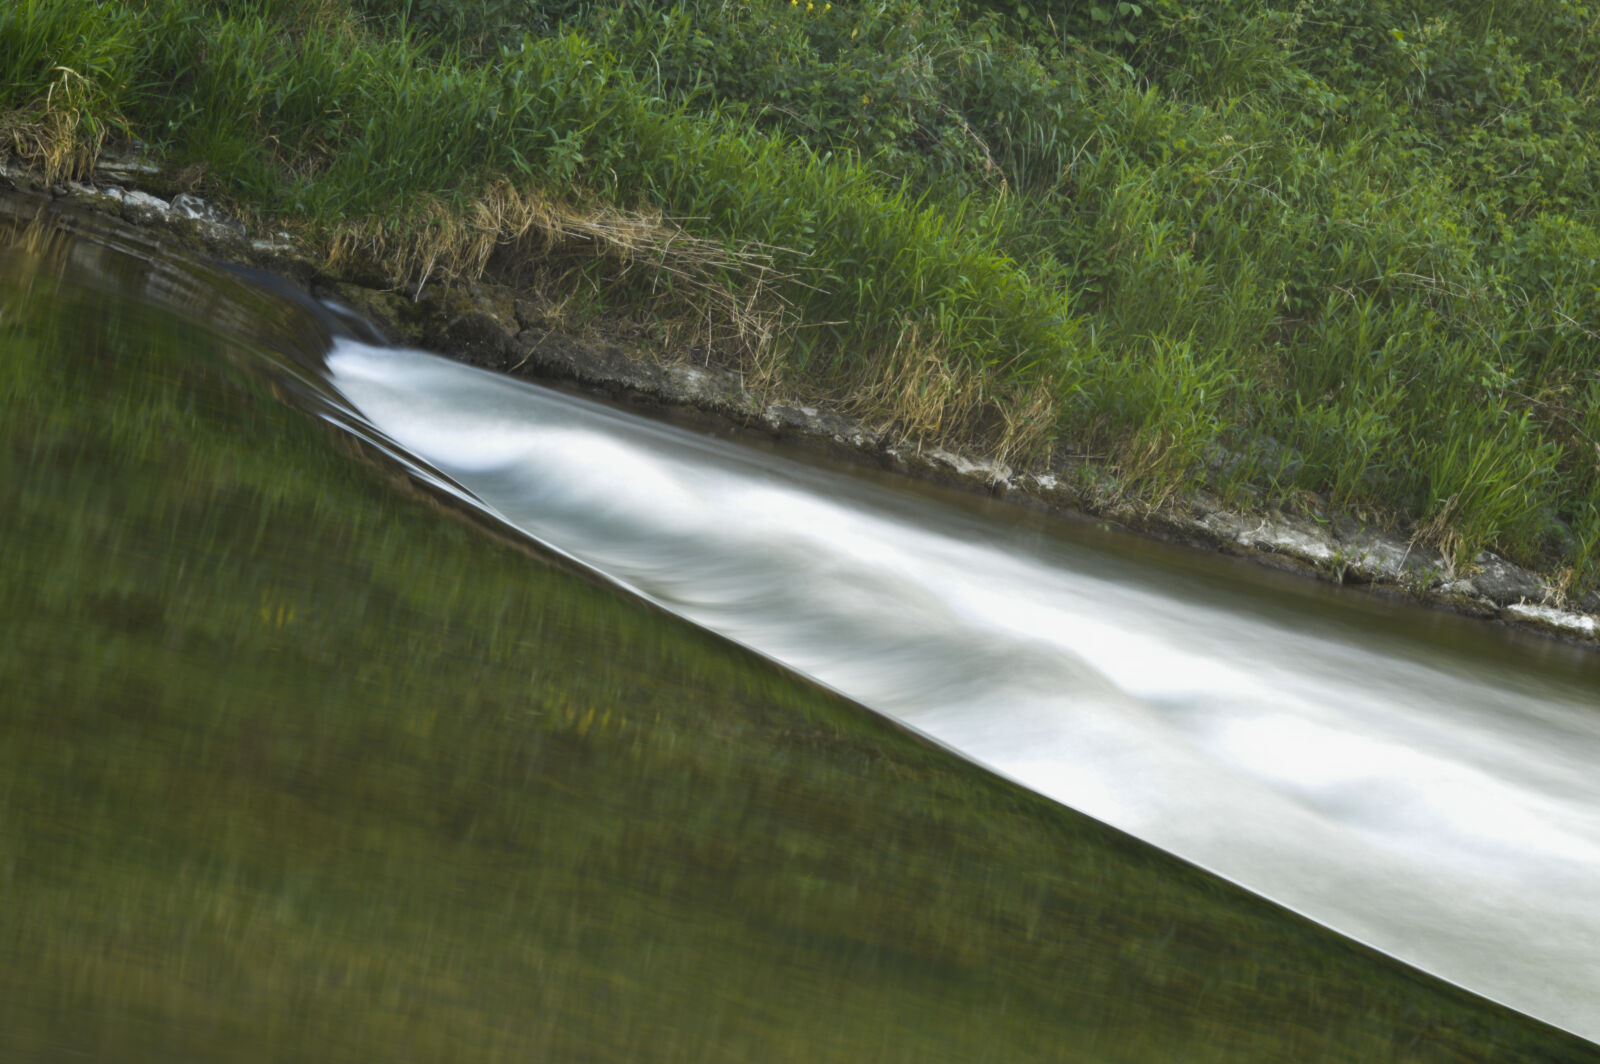 AF Zoom-Nikkor 35-70mm f/3.3-4.5 N sample photo. River photography